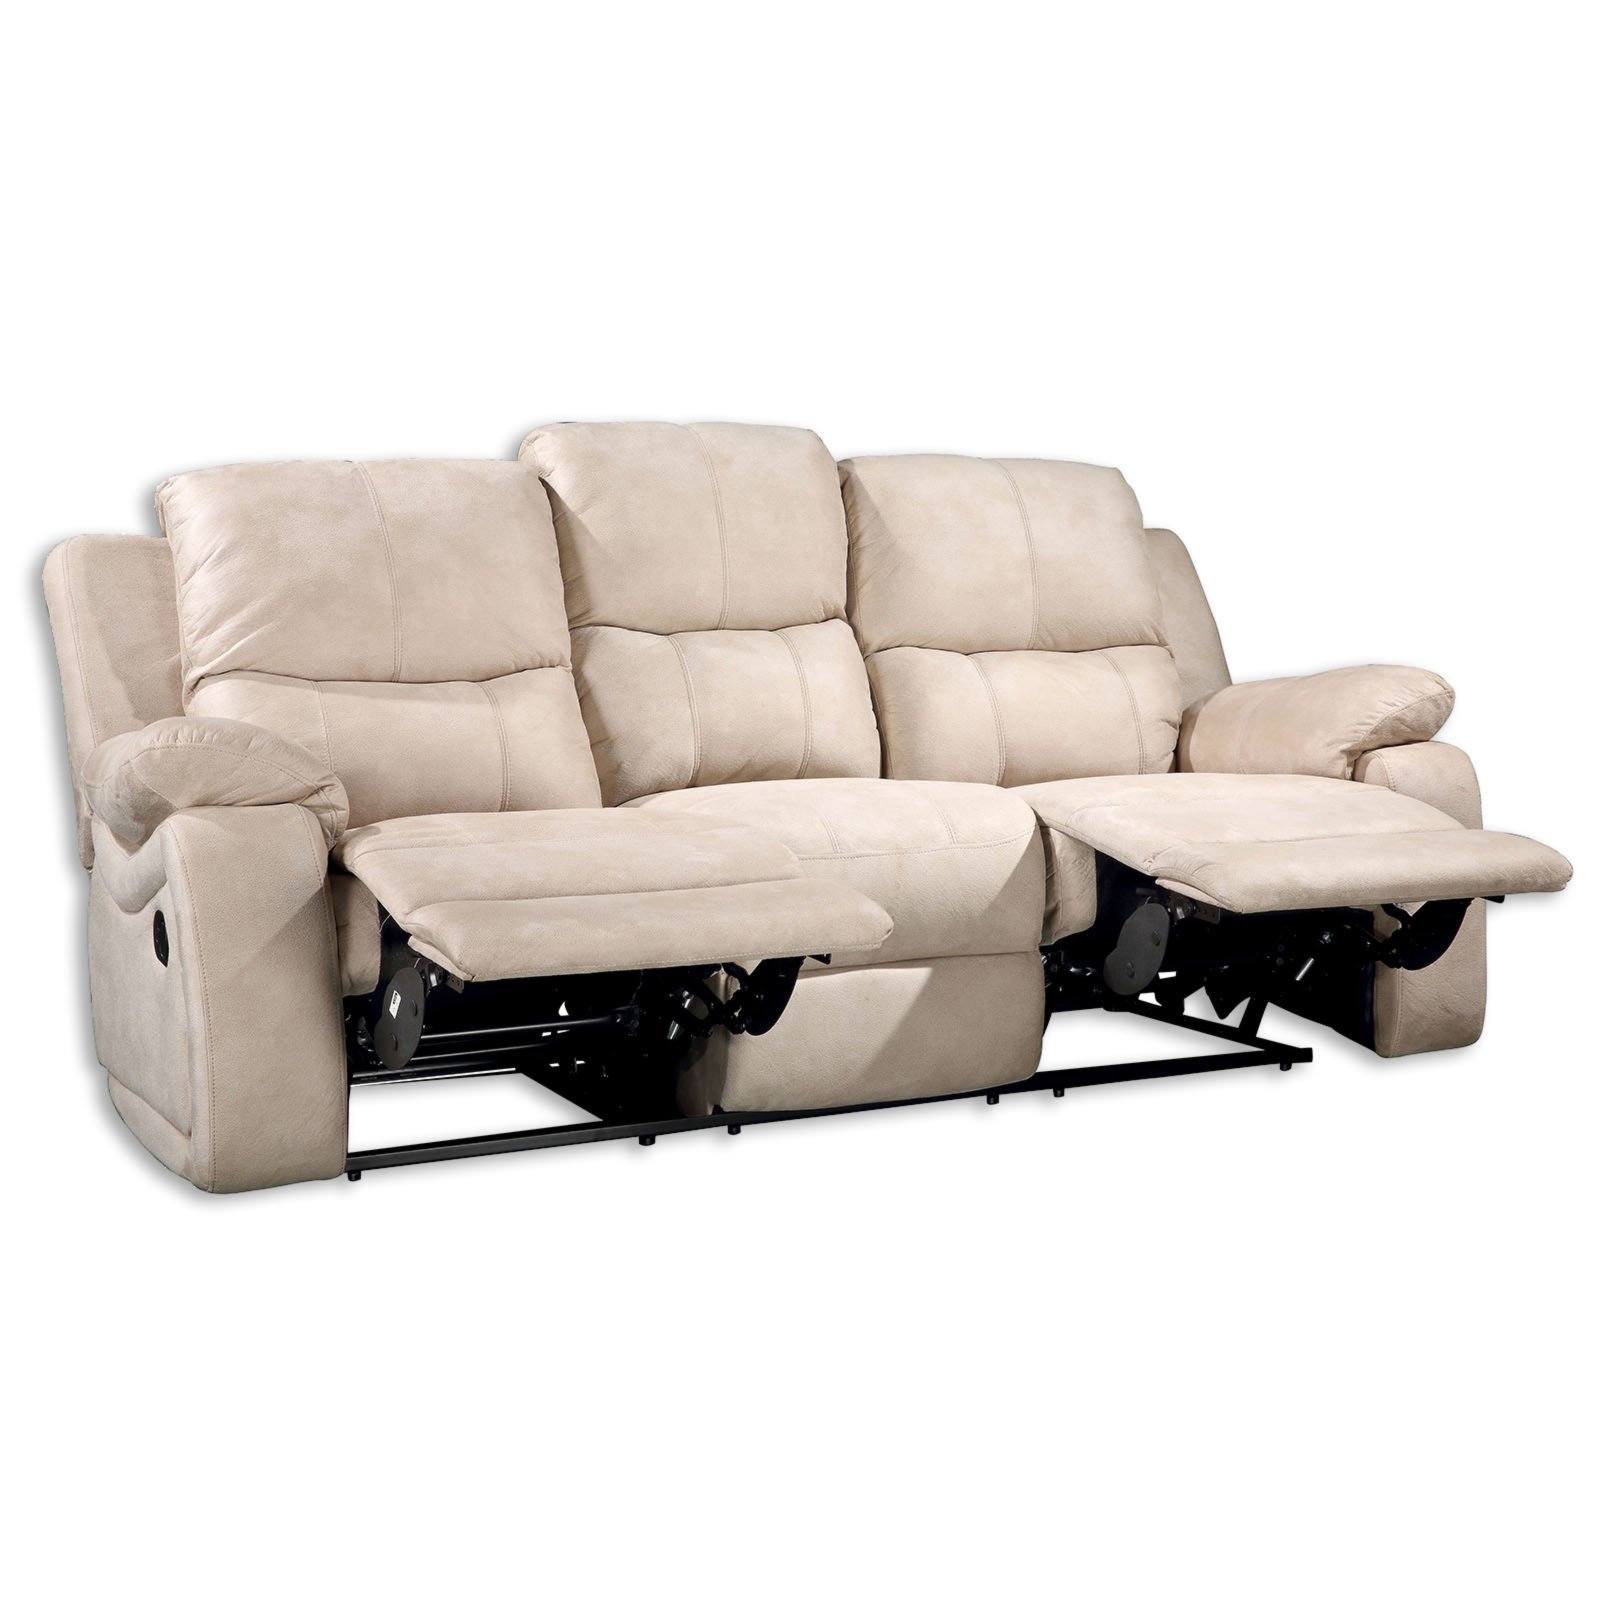 Sofa 20 Sitzer   beige   mit Relaxfunktion   20 cm breit